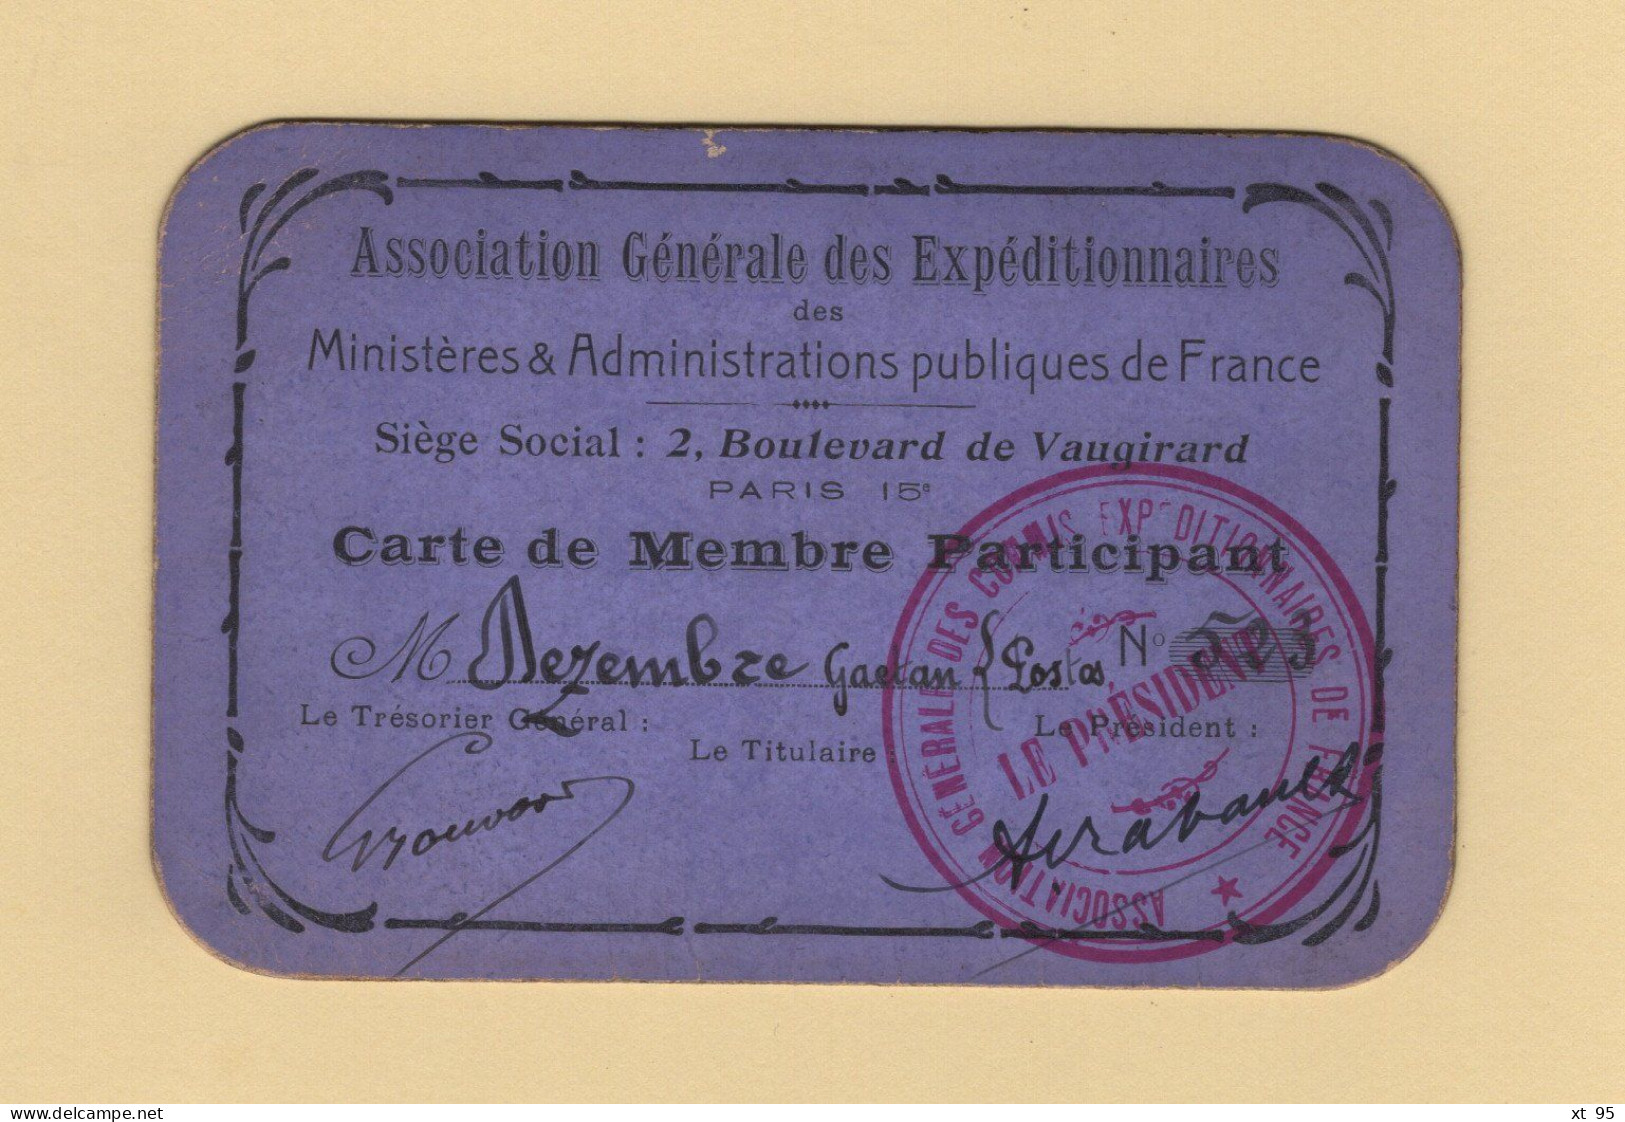 Carte De Membre Participant - Association Generale Des Expeditionnaires - Commis Expeditionnaire - Postes - Cartes De Membre